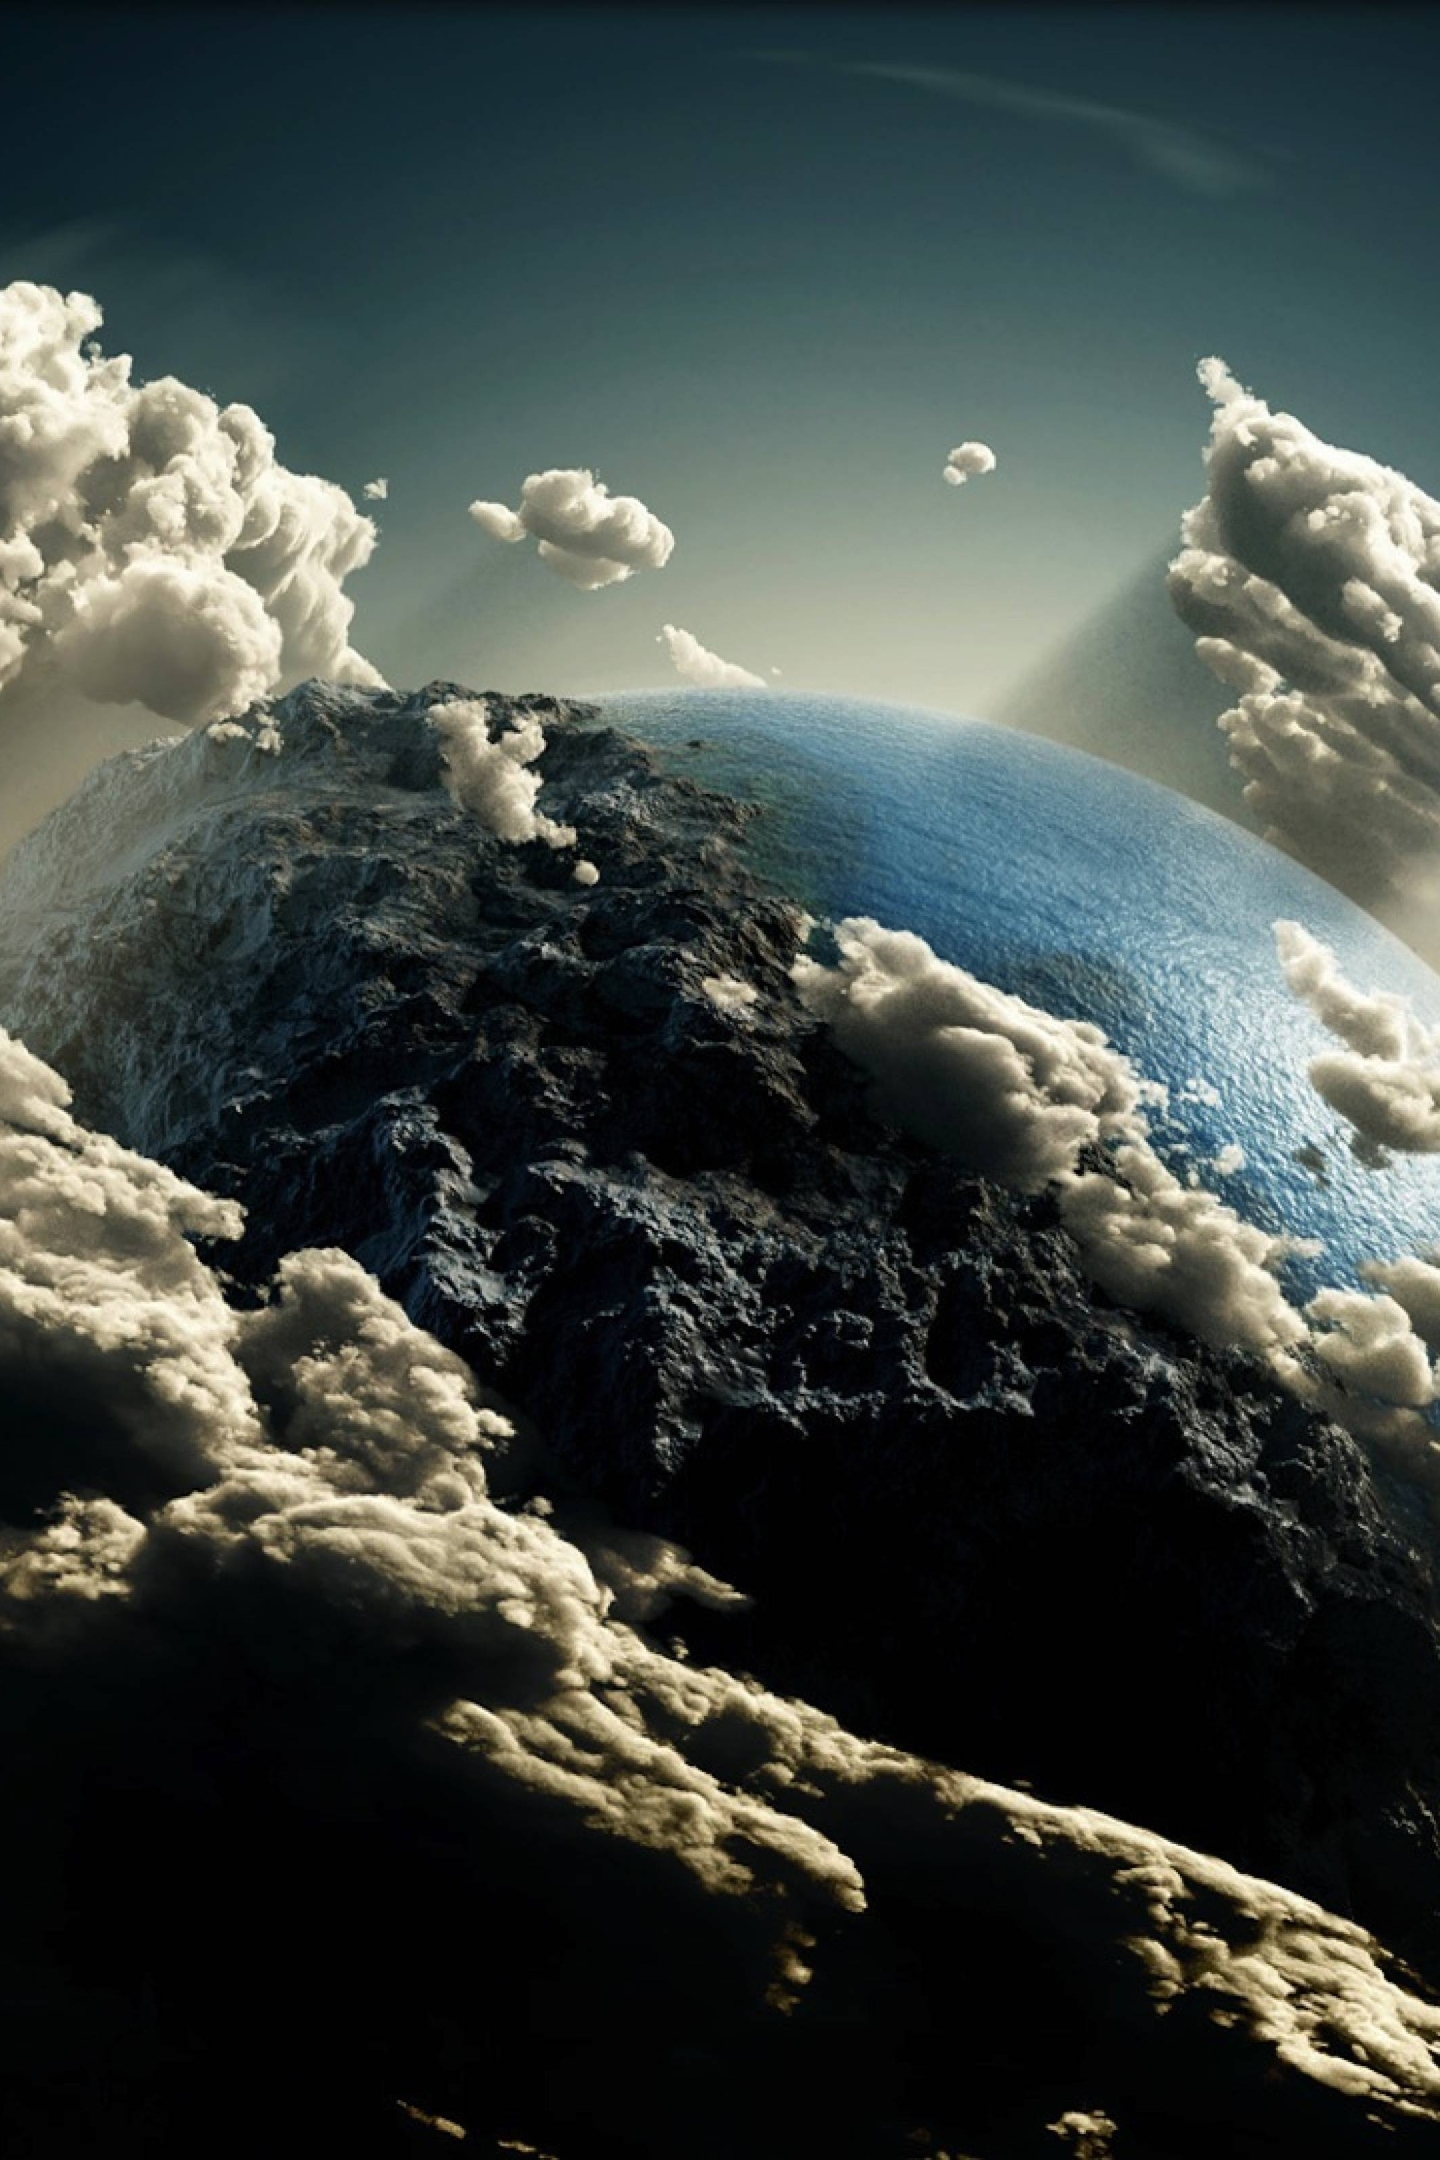 Картинка: Земля, планета, космос, облака, свет, звезда